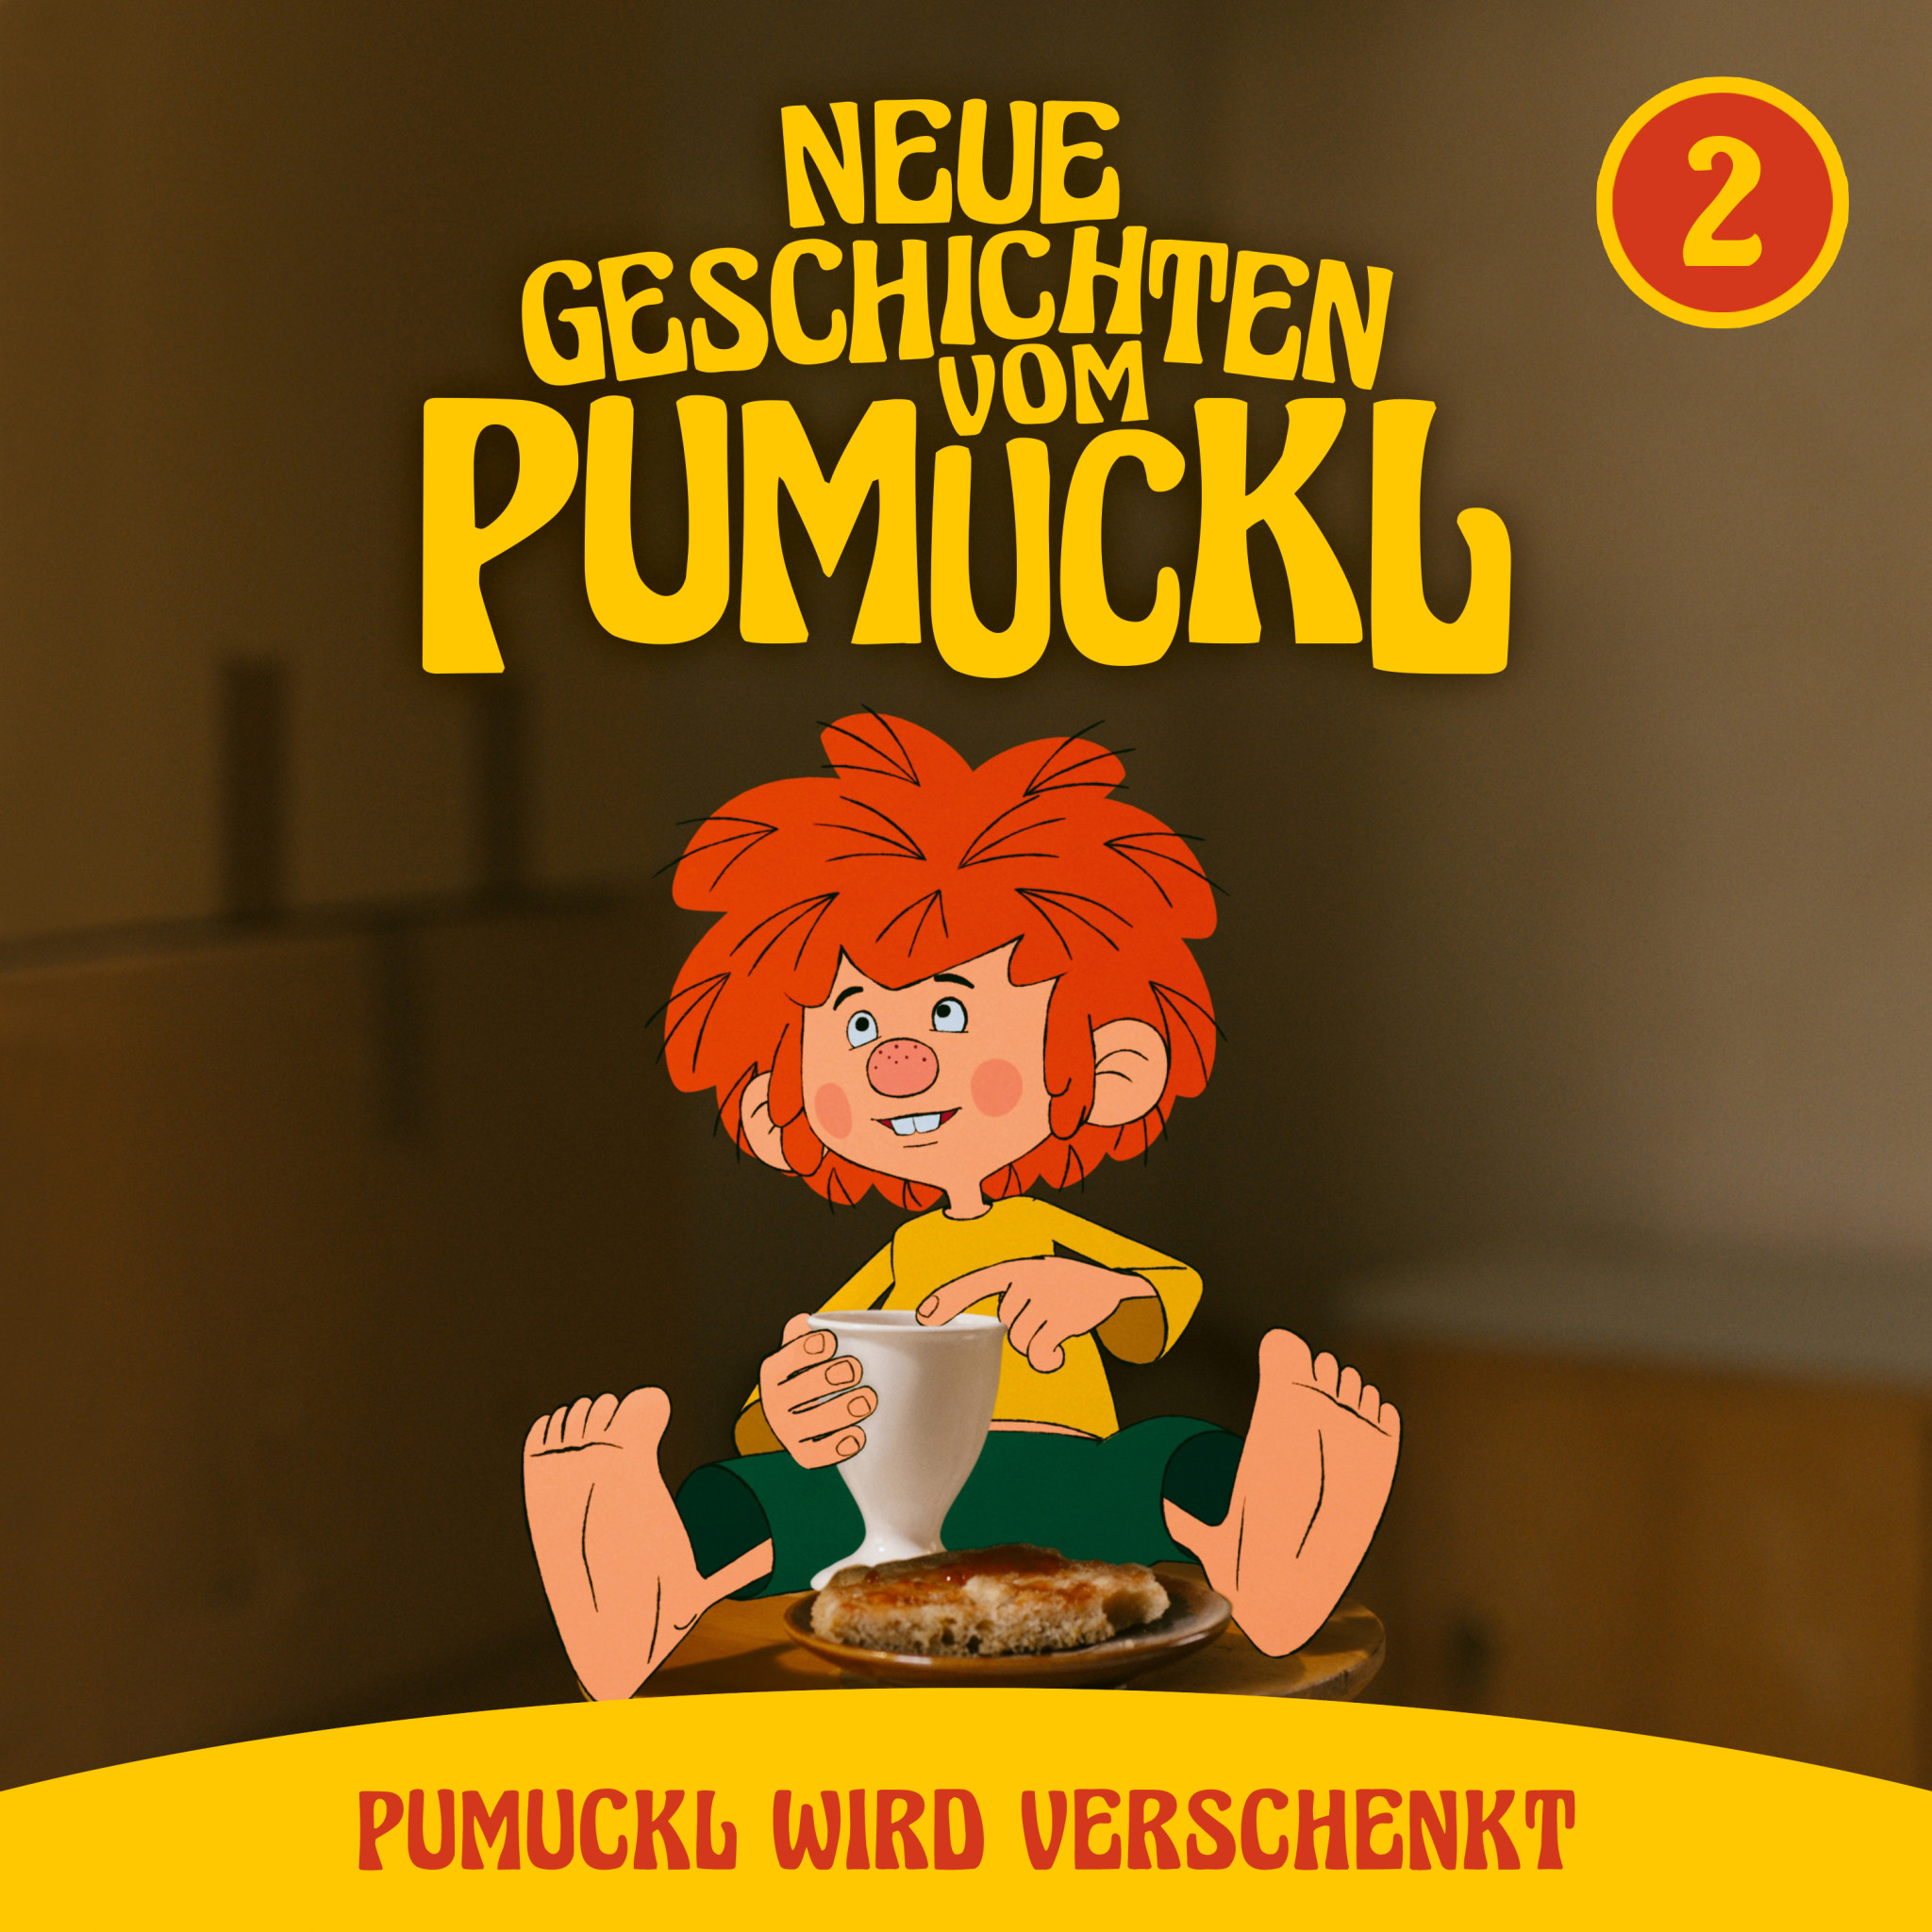 Pumuckl_Folge 02 - Pumuckl_wird_verschenkt_eCOVER_3k_sRGB.jpg